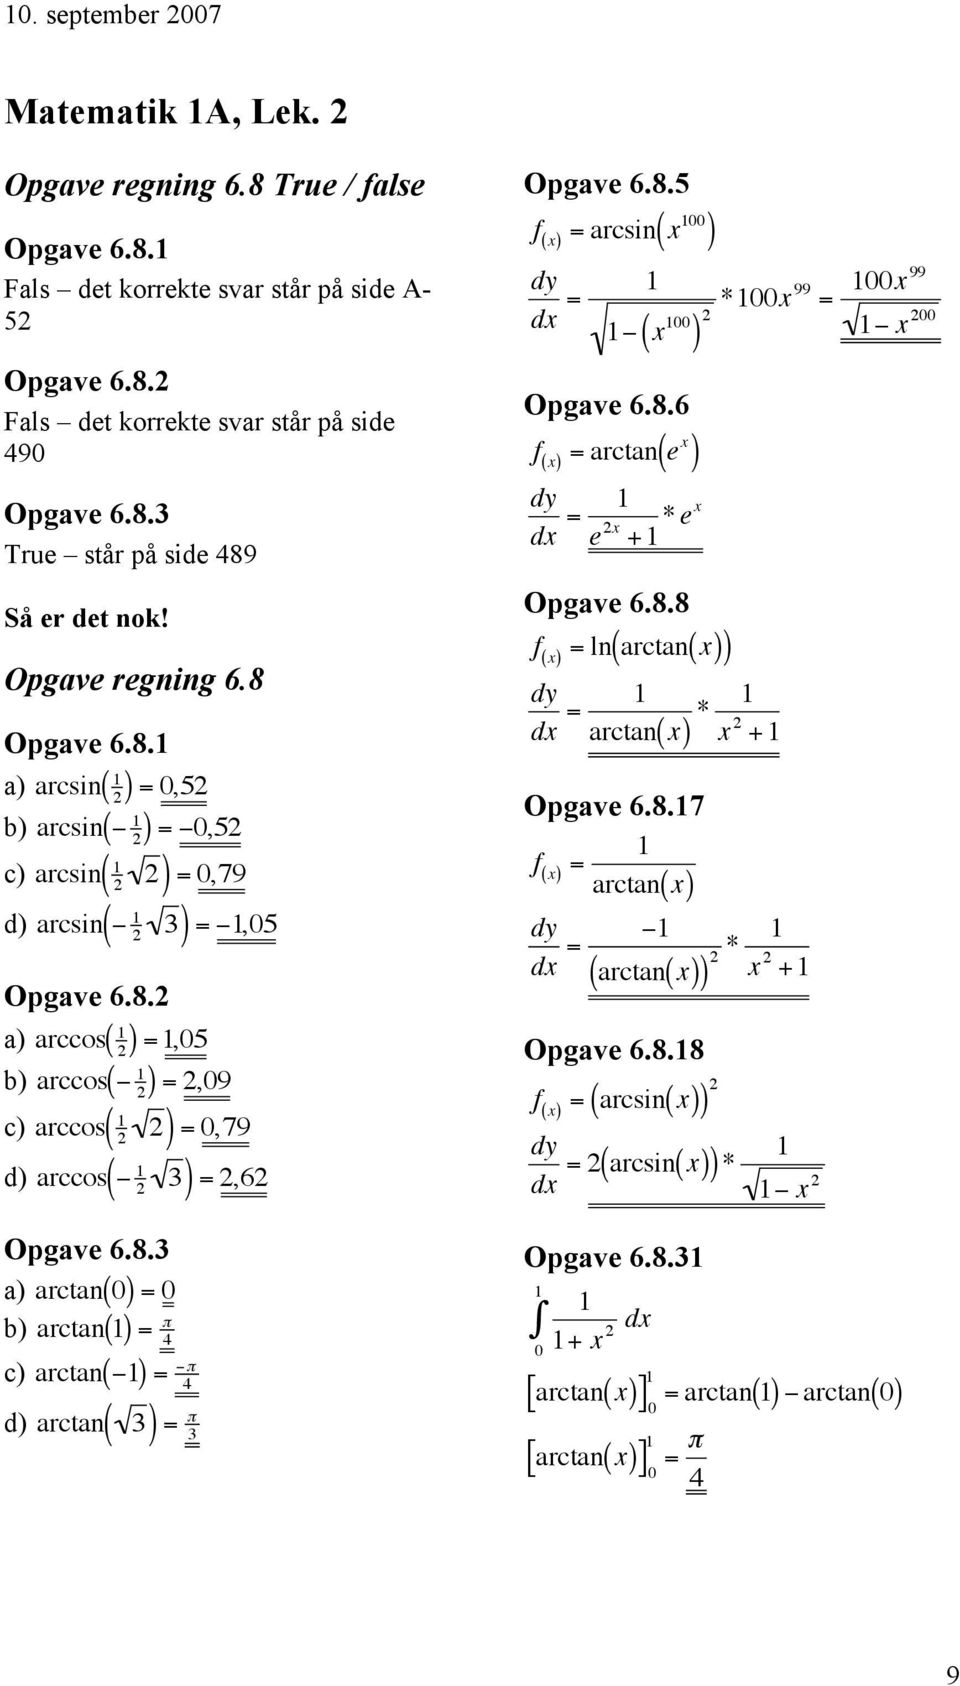 8.5 f ( x = arcsin x dy dx = " x Opgave 6.8.6 f ( x = arctan e x *x 99 = x 99 dy dx = e x + *ex Opgave 6.8.8 f x ( = ln arctan x dy dx = arctan( x * x + Opgave 6.8.7 f ( x = arctan x dy dx = " arctan x ( * Opgave 6.